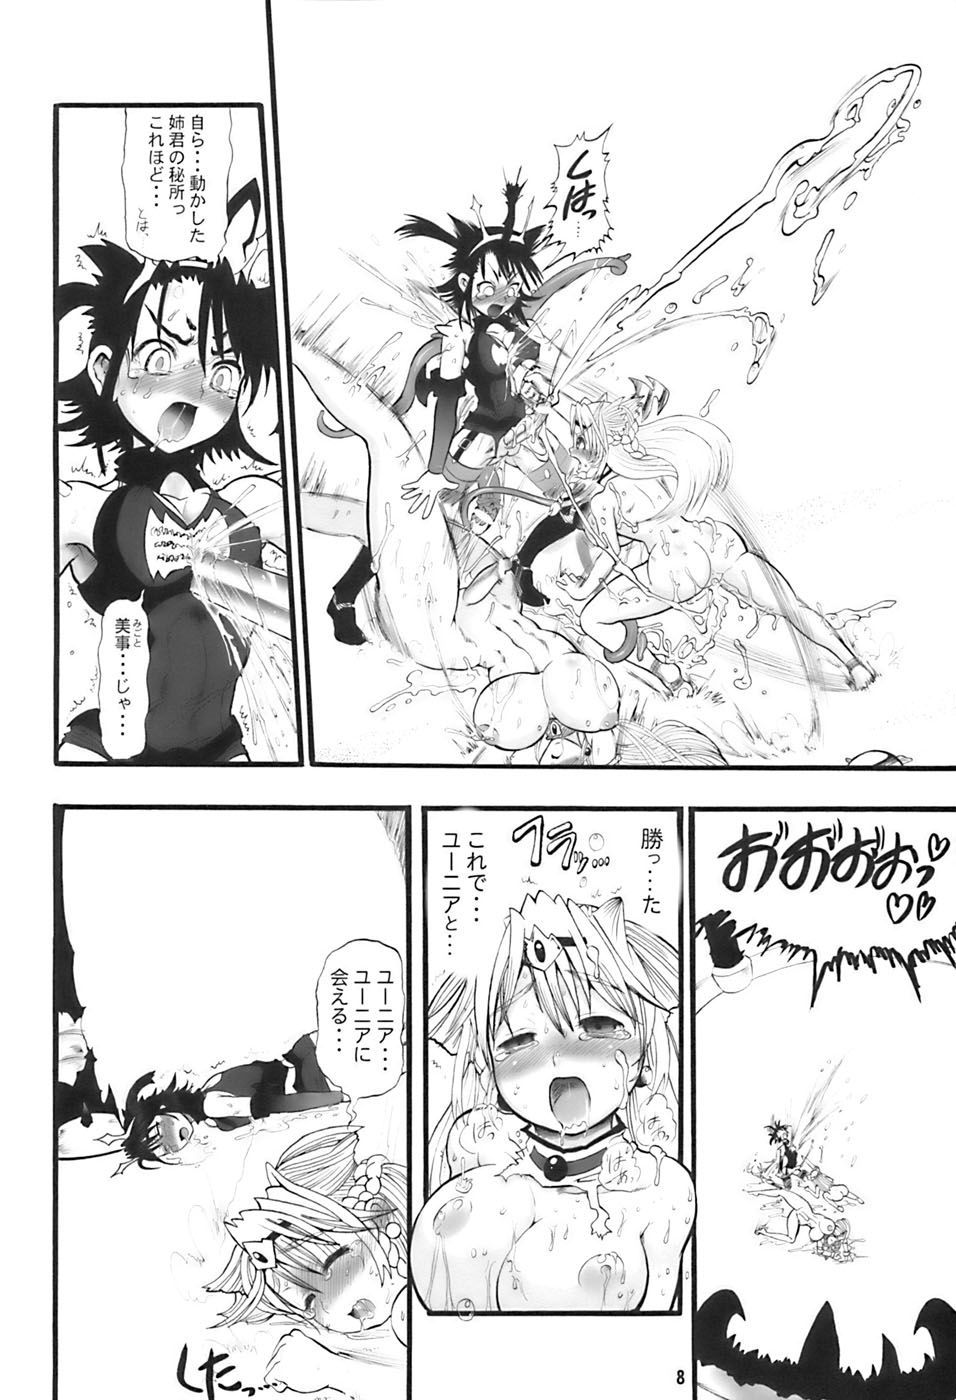 (Futaket vs. ABC ~Hentaisai~) [Arsenothelus (Rebis)] TGWOA 21 - Futari no Meikyuu Oujo III page 8 full